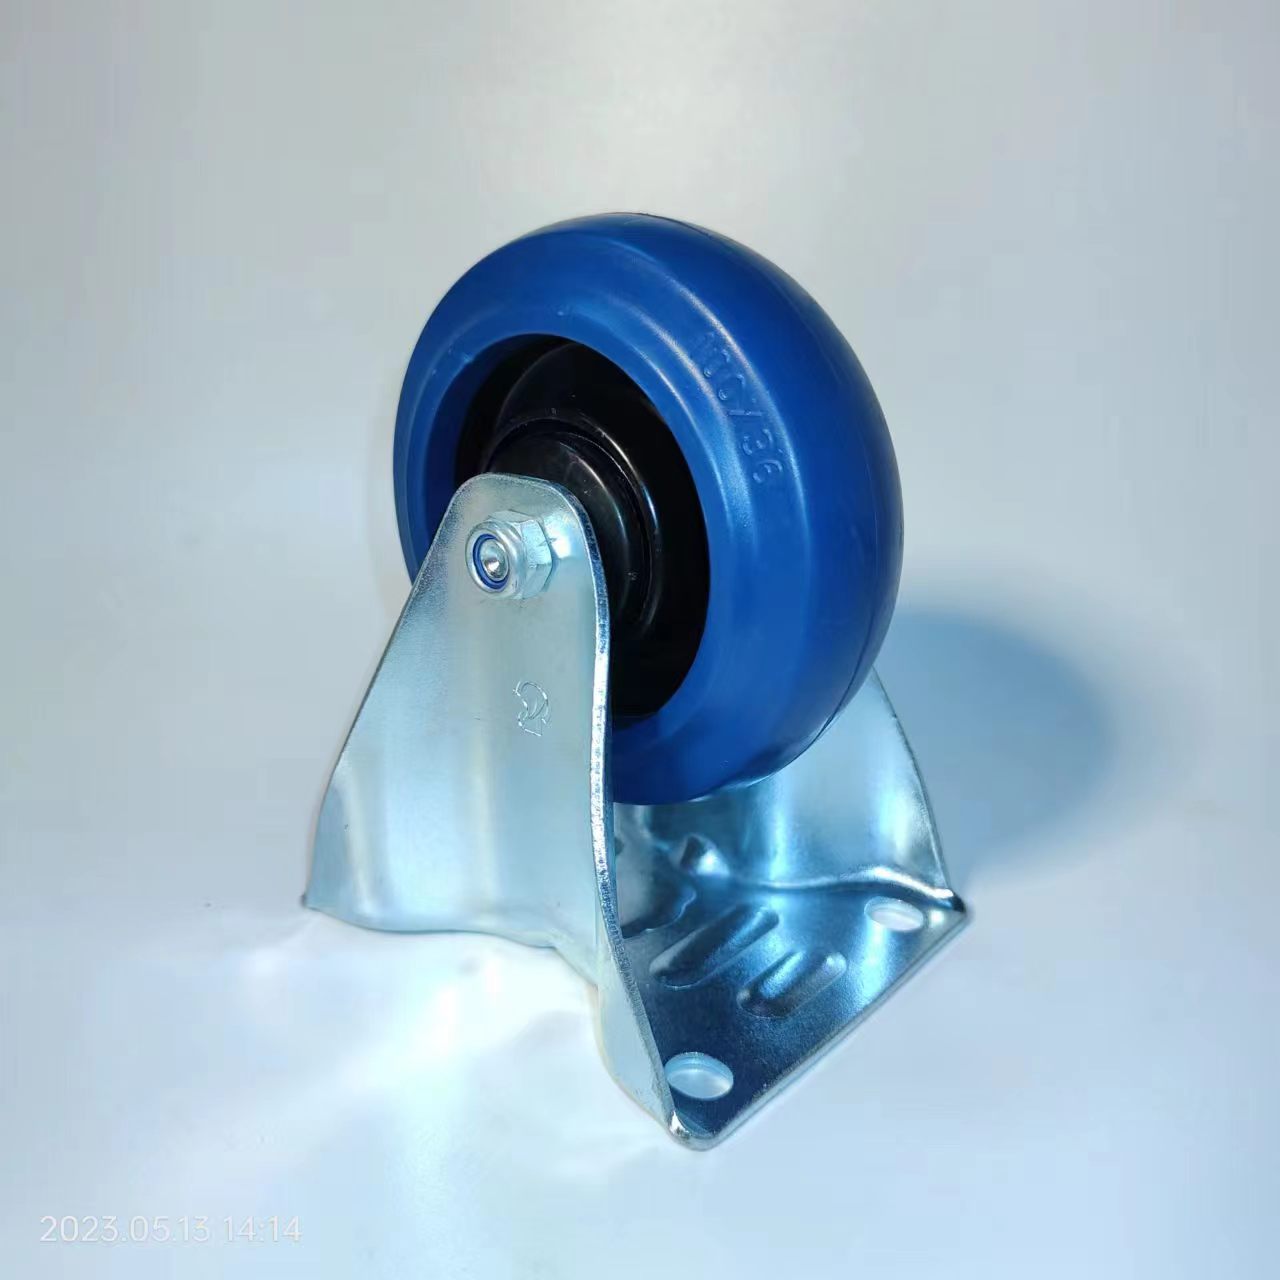 [Produtos desta semana] Roda industrial europea de 100 mm, caucho elástico azul, rodamento de bolas